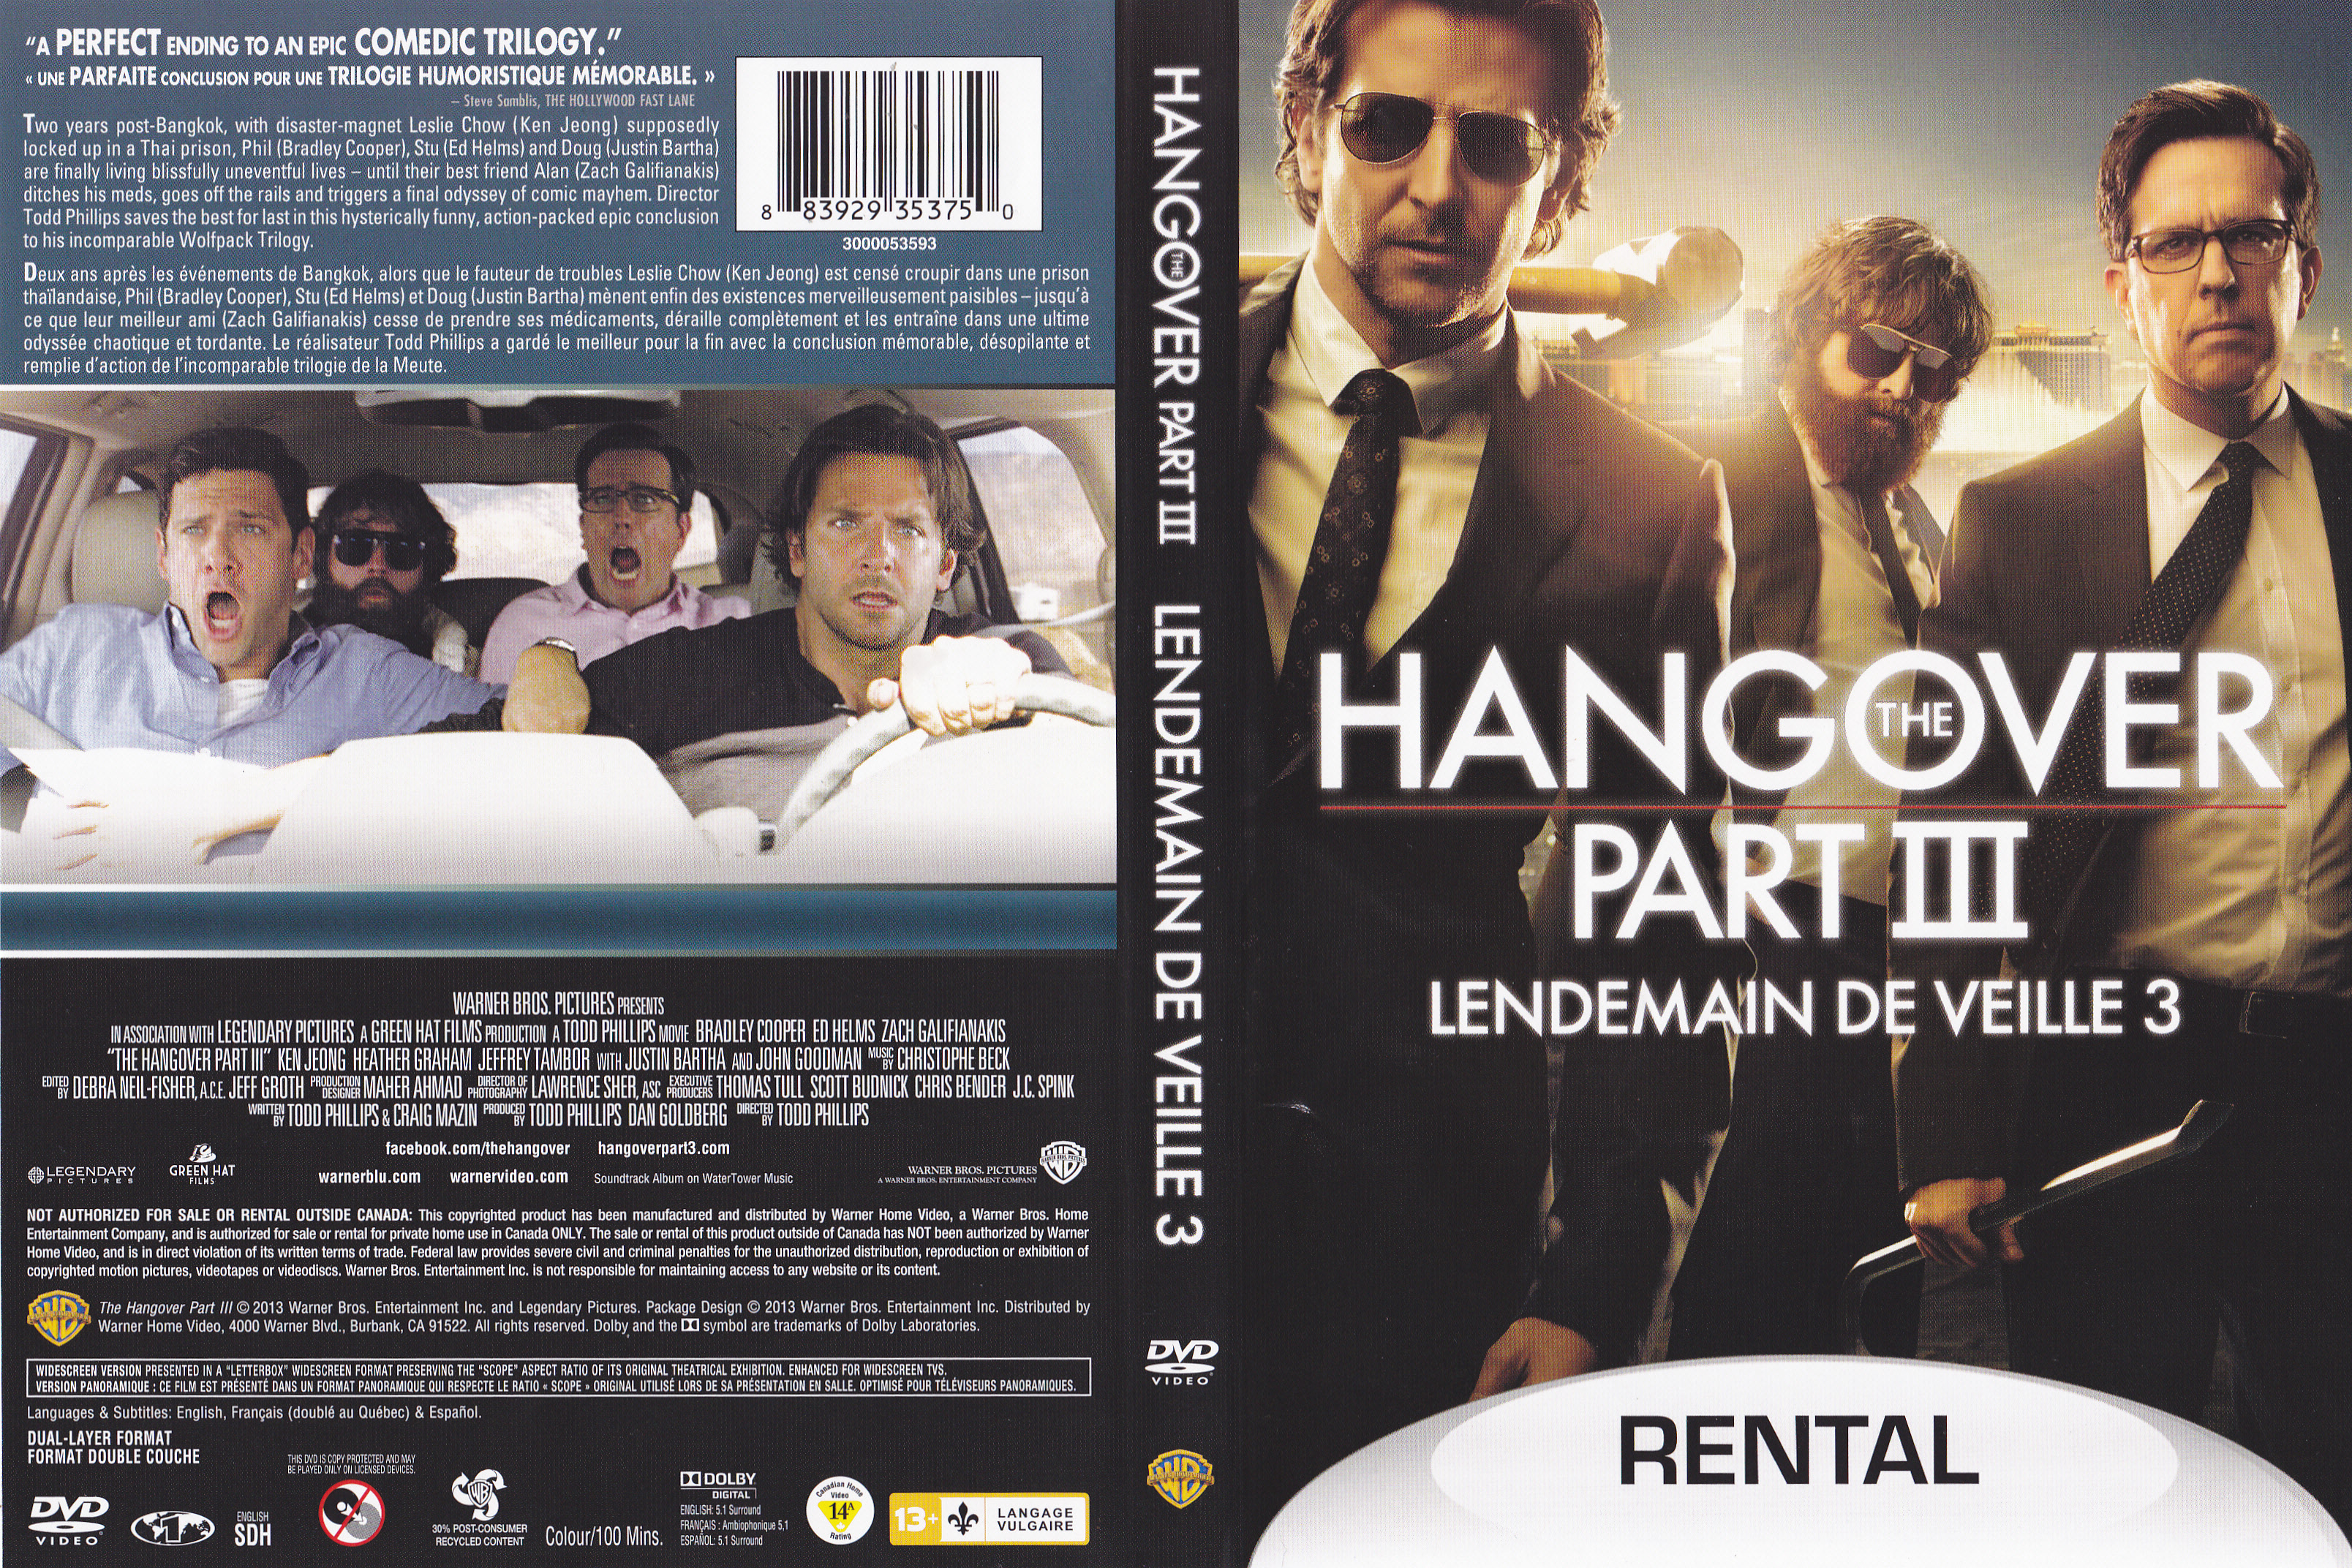 Jaquette DVD The hangover 3 - Lendemain de veille 3 (Canadienne)